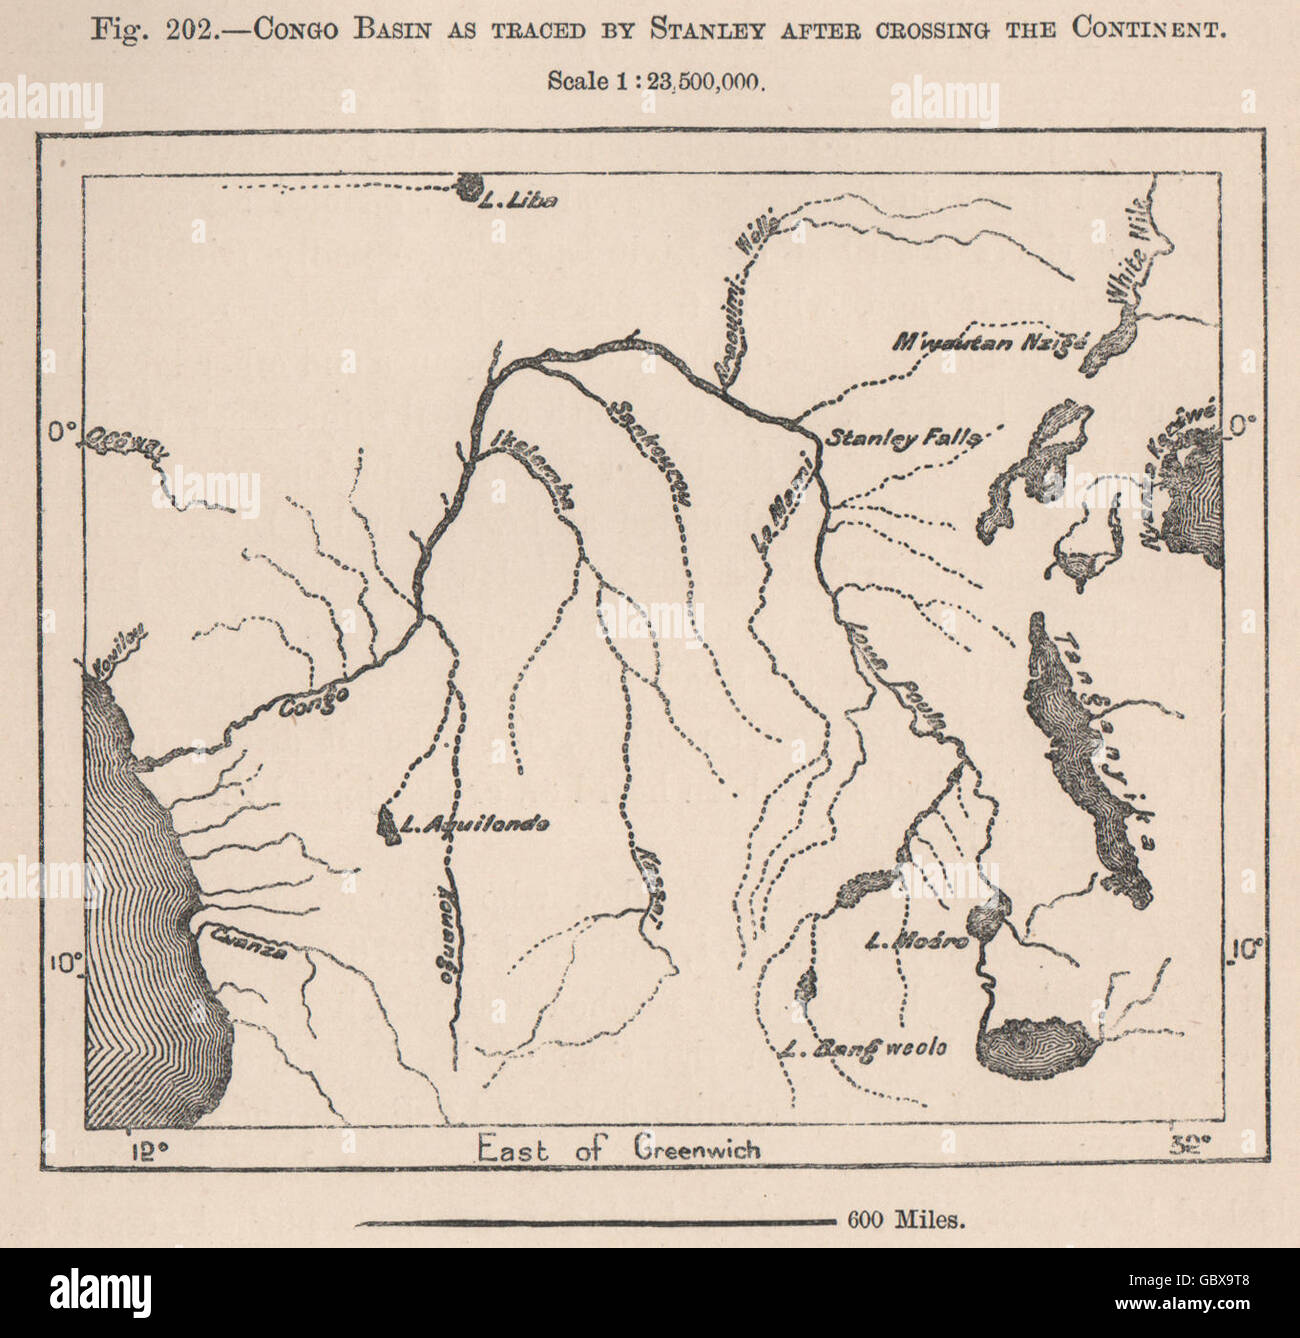 Cuenca del Congo como trazada por Stanley, después de cruzar el continente, 1885 viejo mapa Foto de stock